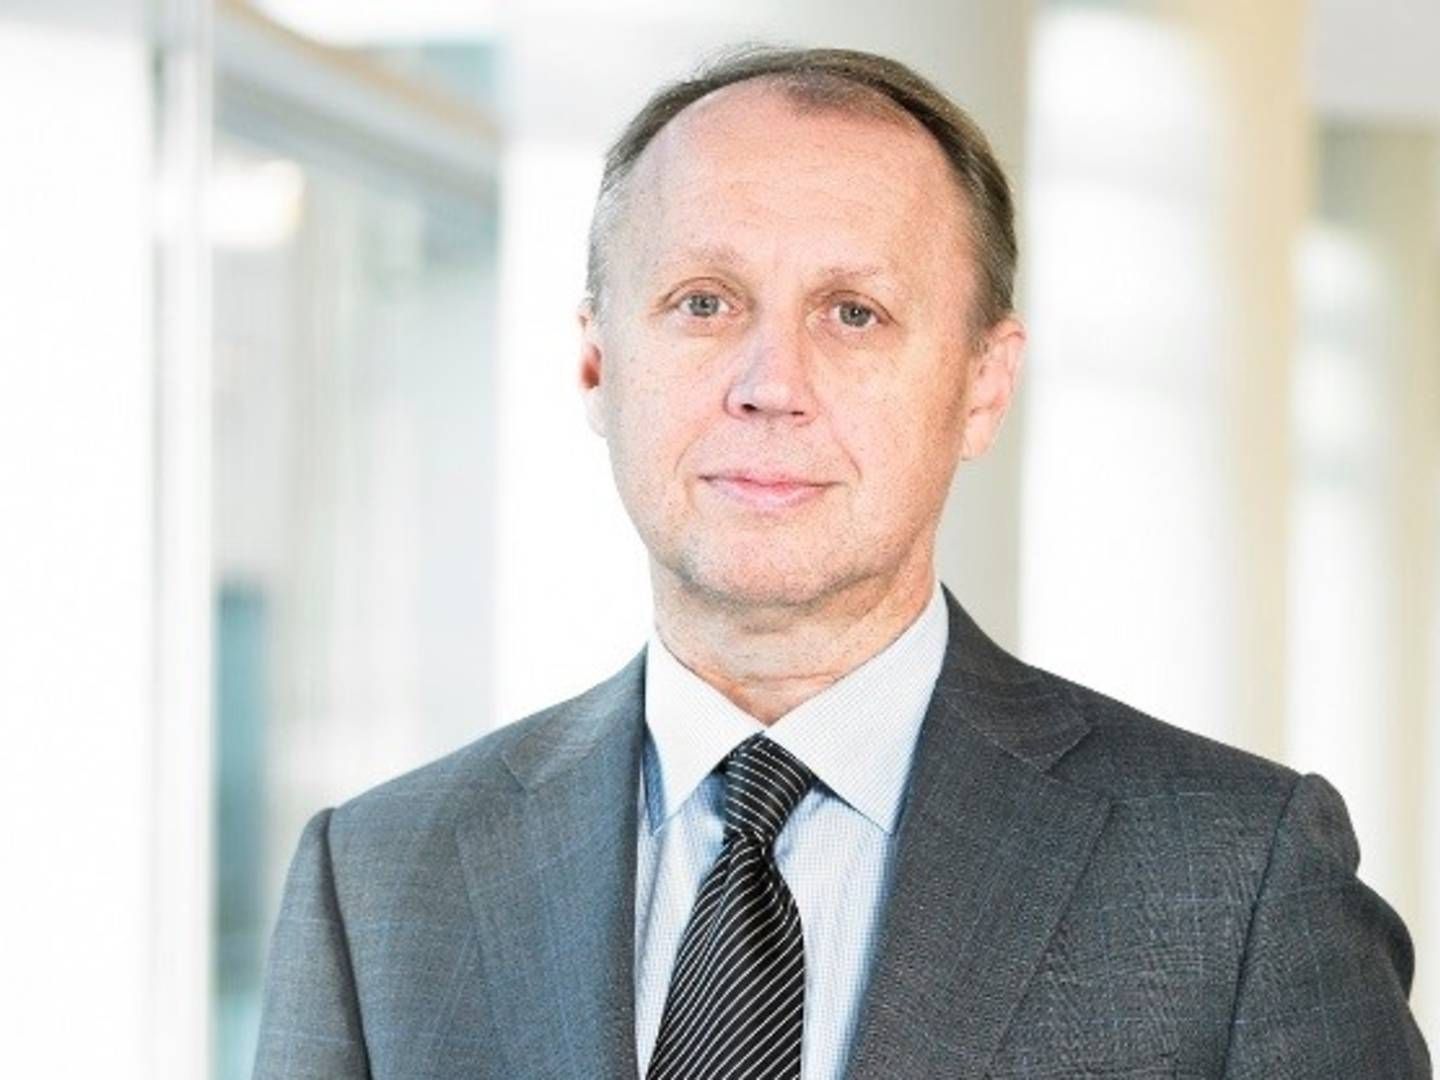 Adm. direktør i Bioporto, Peter Mørch Eriksen, føler sig sikker på, at hans plan om en rettet aktieemission lykkes, selvom han netop har måtte udskyde den på grund af frygten for coronavirus på de internationale aktiemarkeder. | Foto: Bioporto / PR